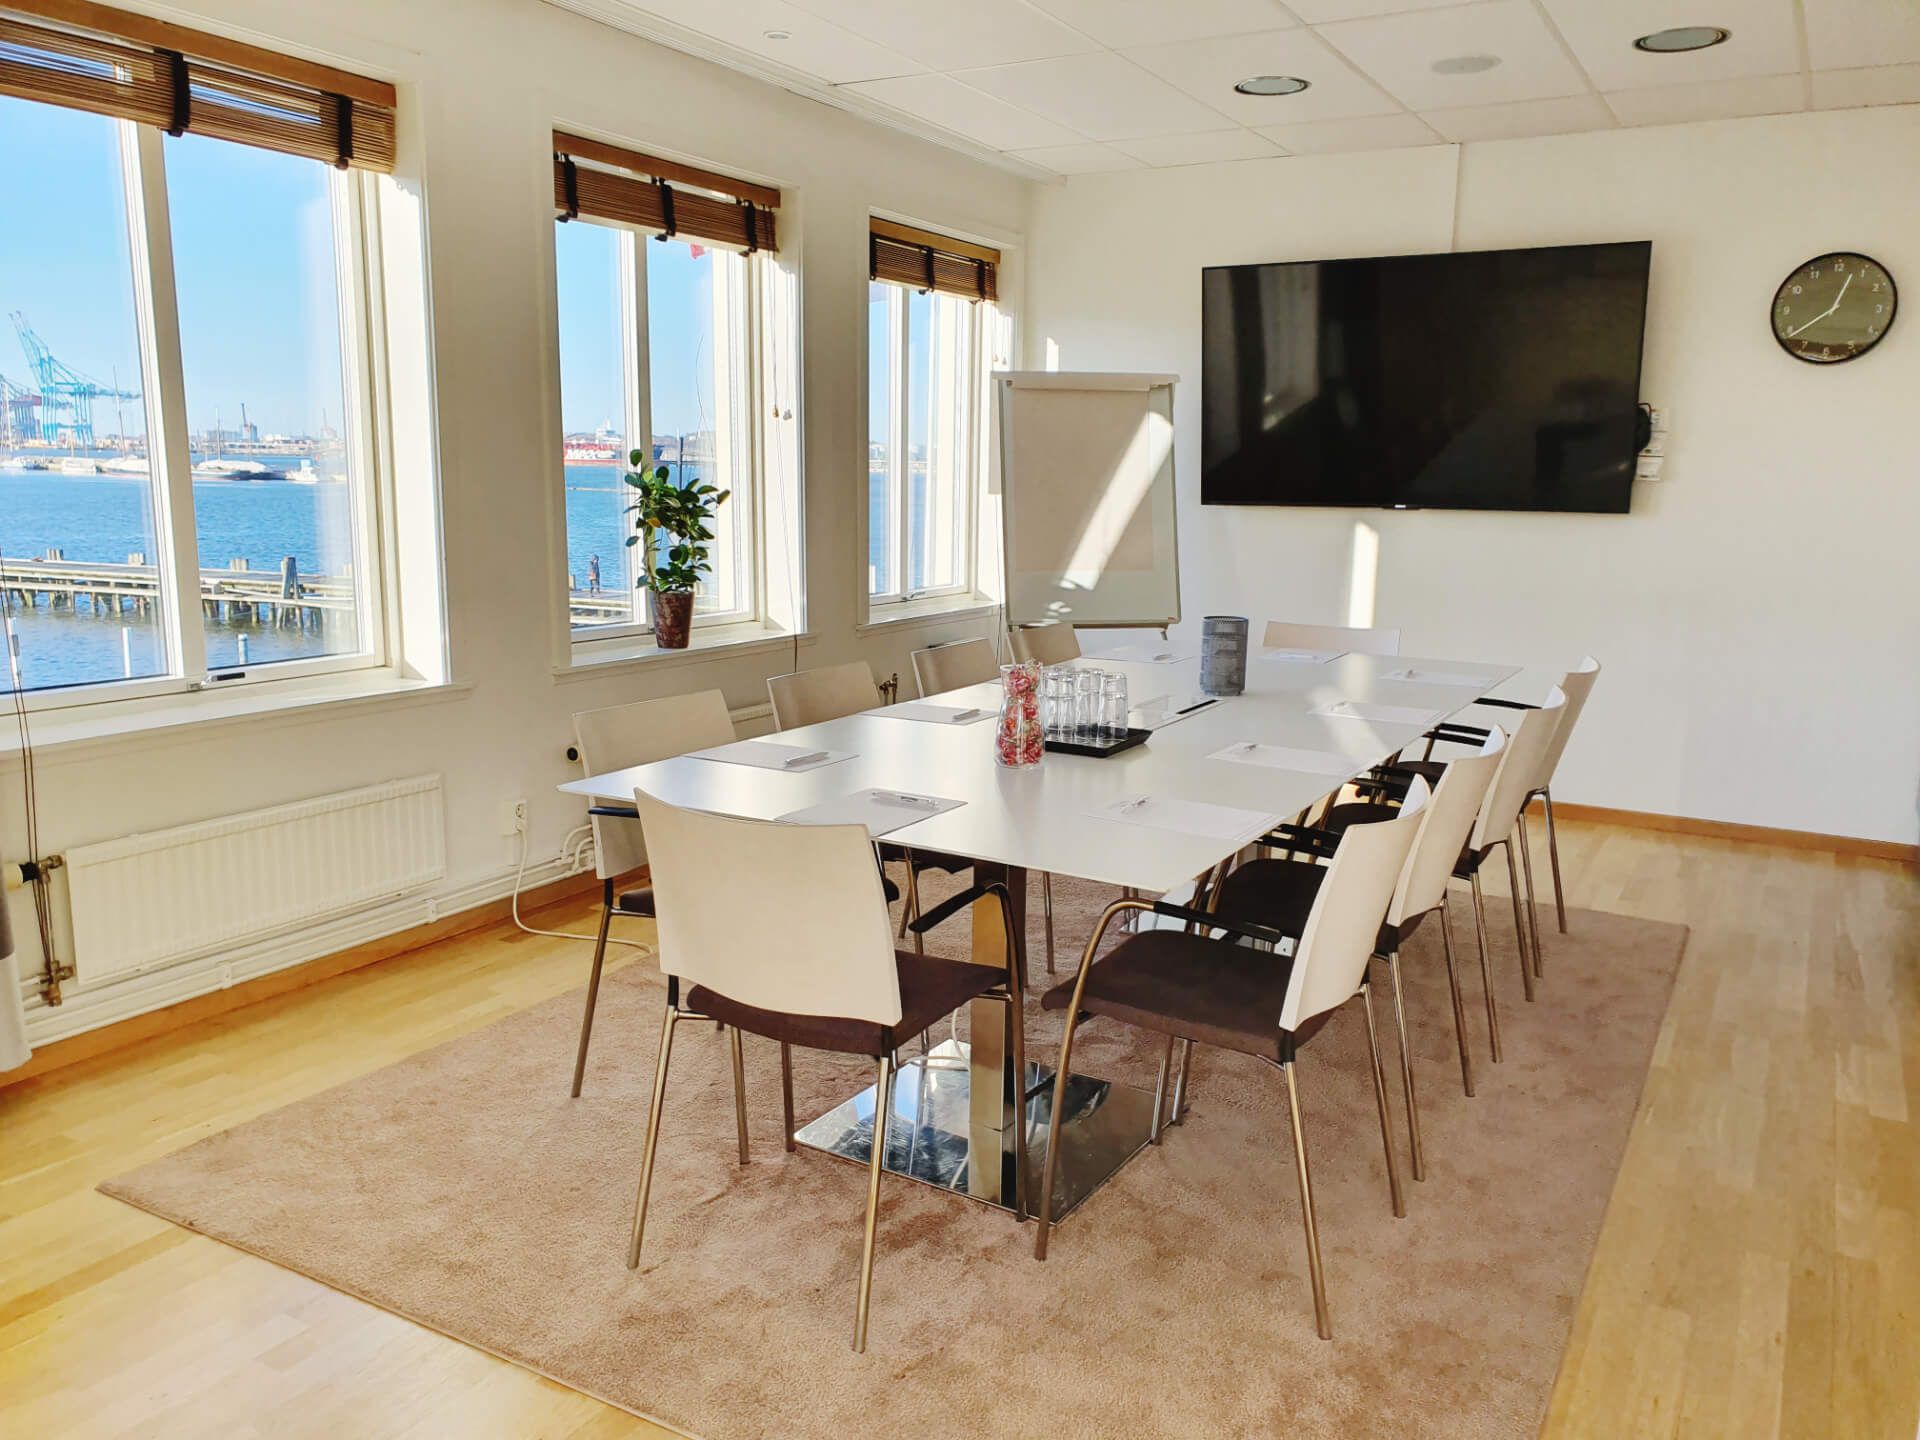 Dockyard Hotel ligger vid havet i Göteborg och erbjuder fem mötesrum i olika storlekar